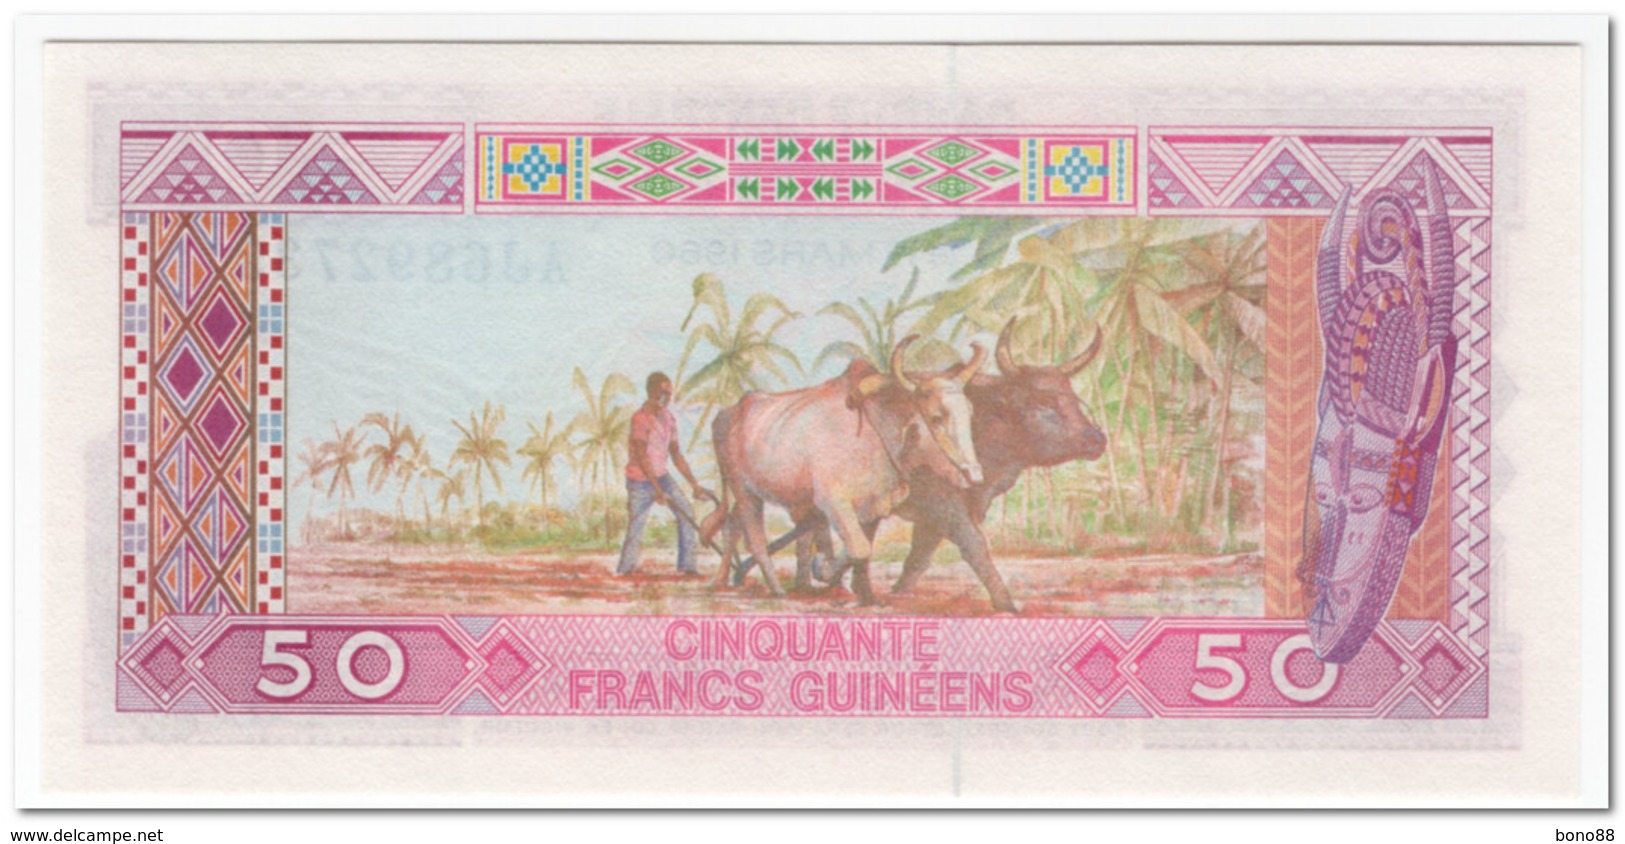 GUINEA,50 FRANCS,1985,P.29,UNC - Guinea